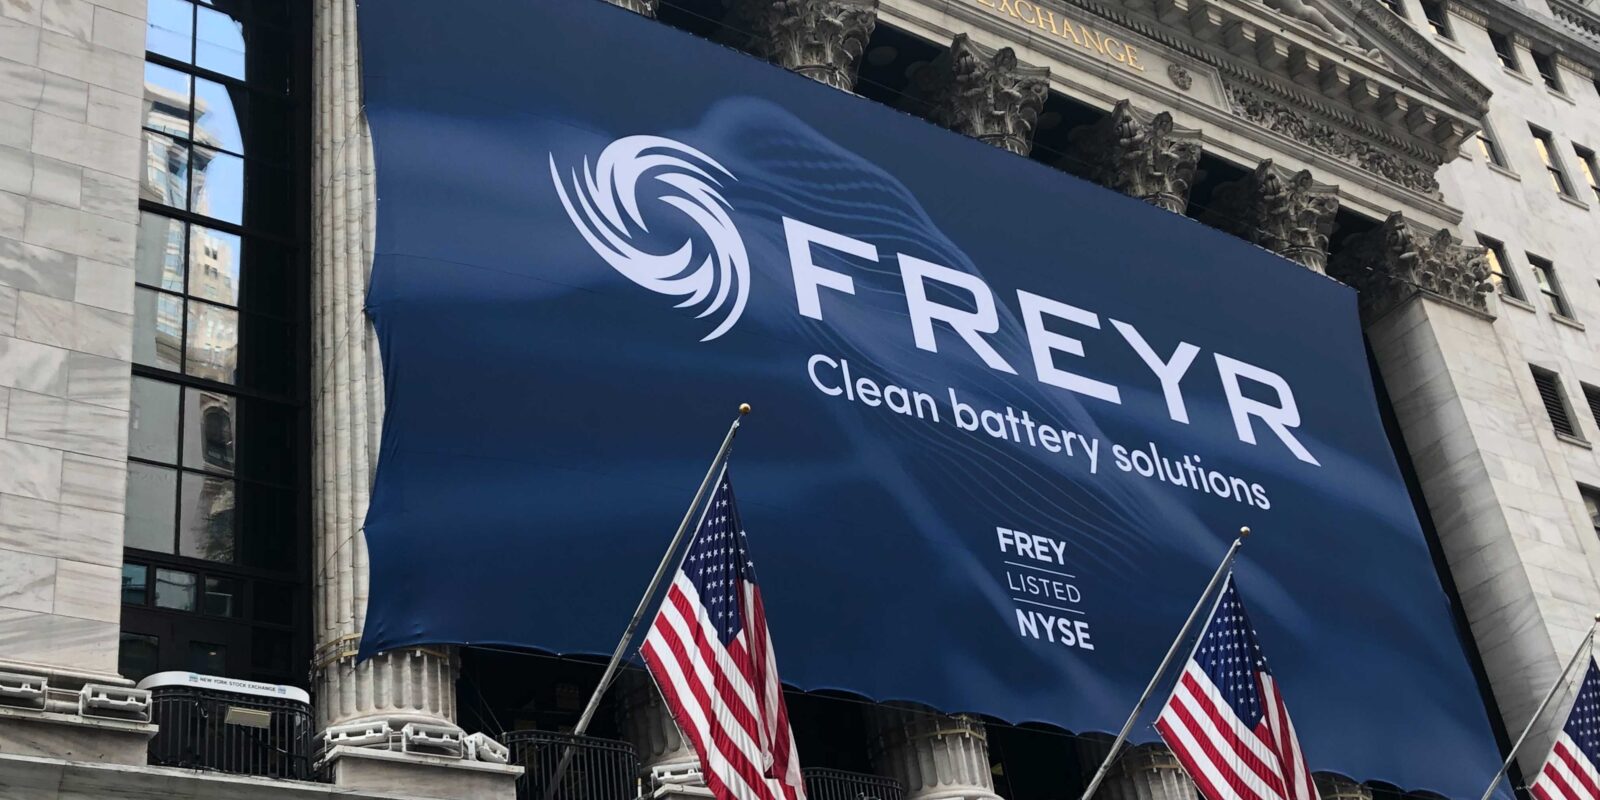 FREYR Battery NYSE banner